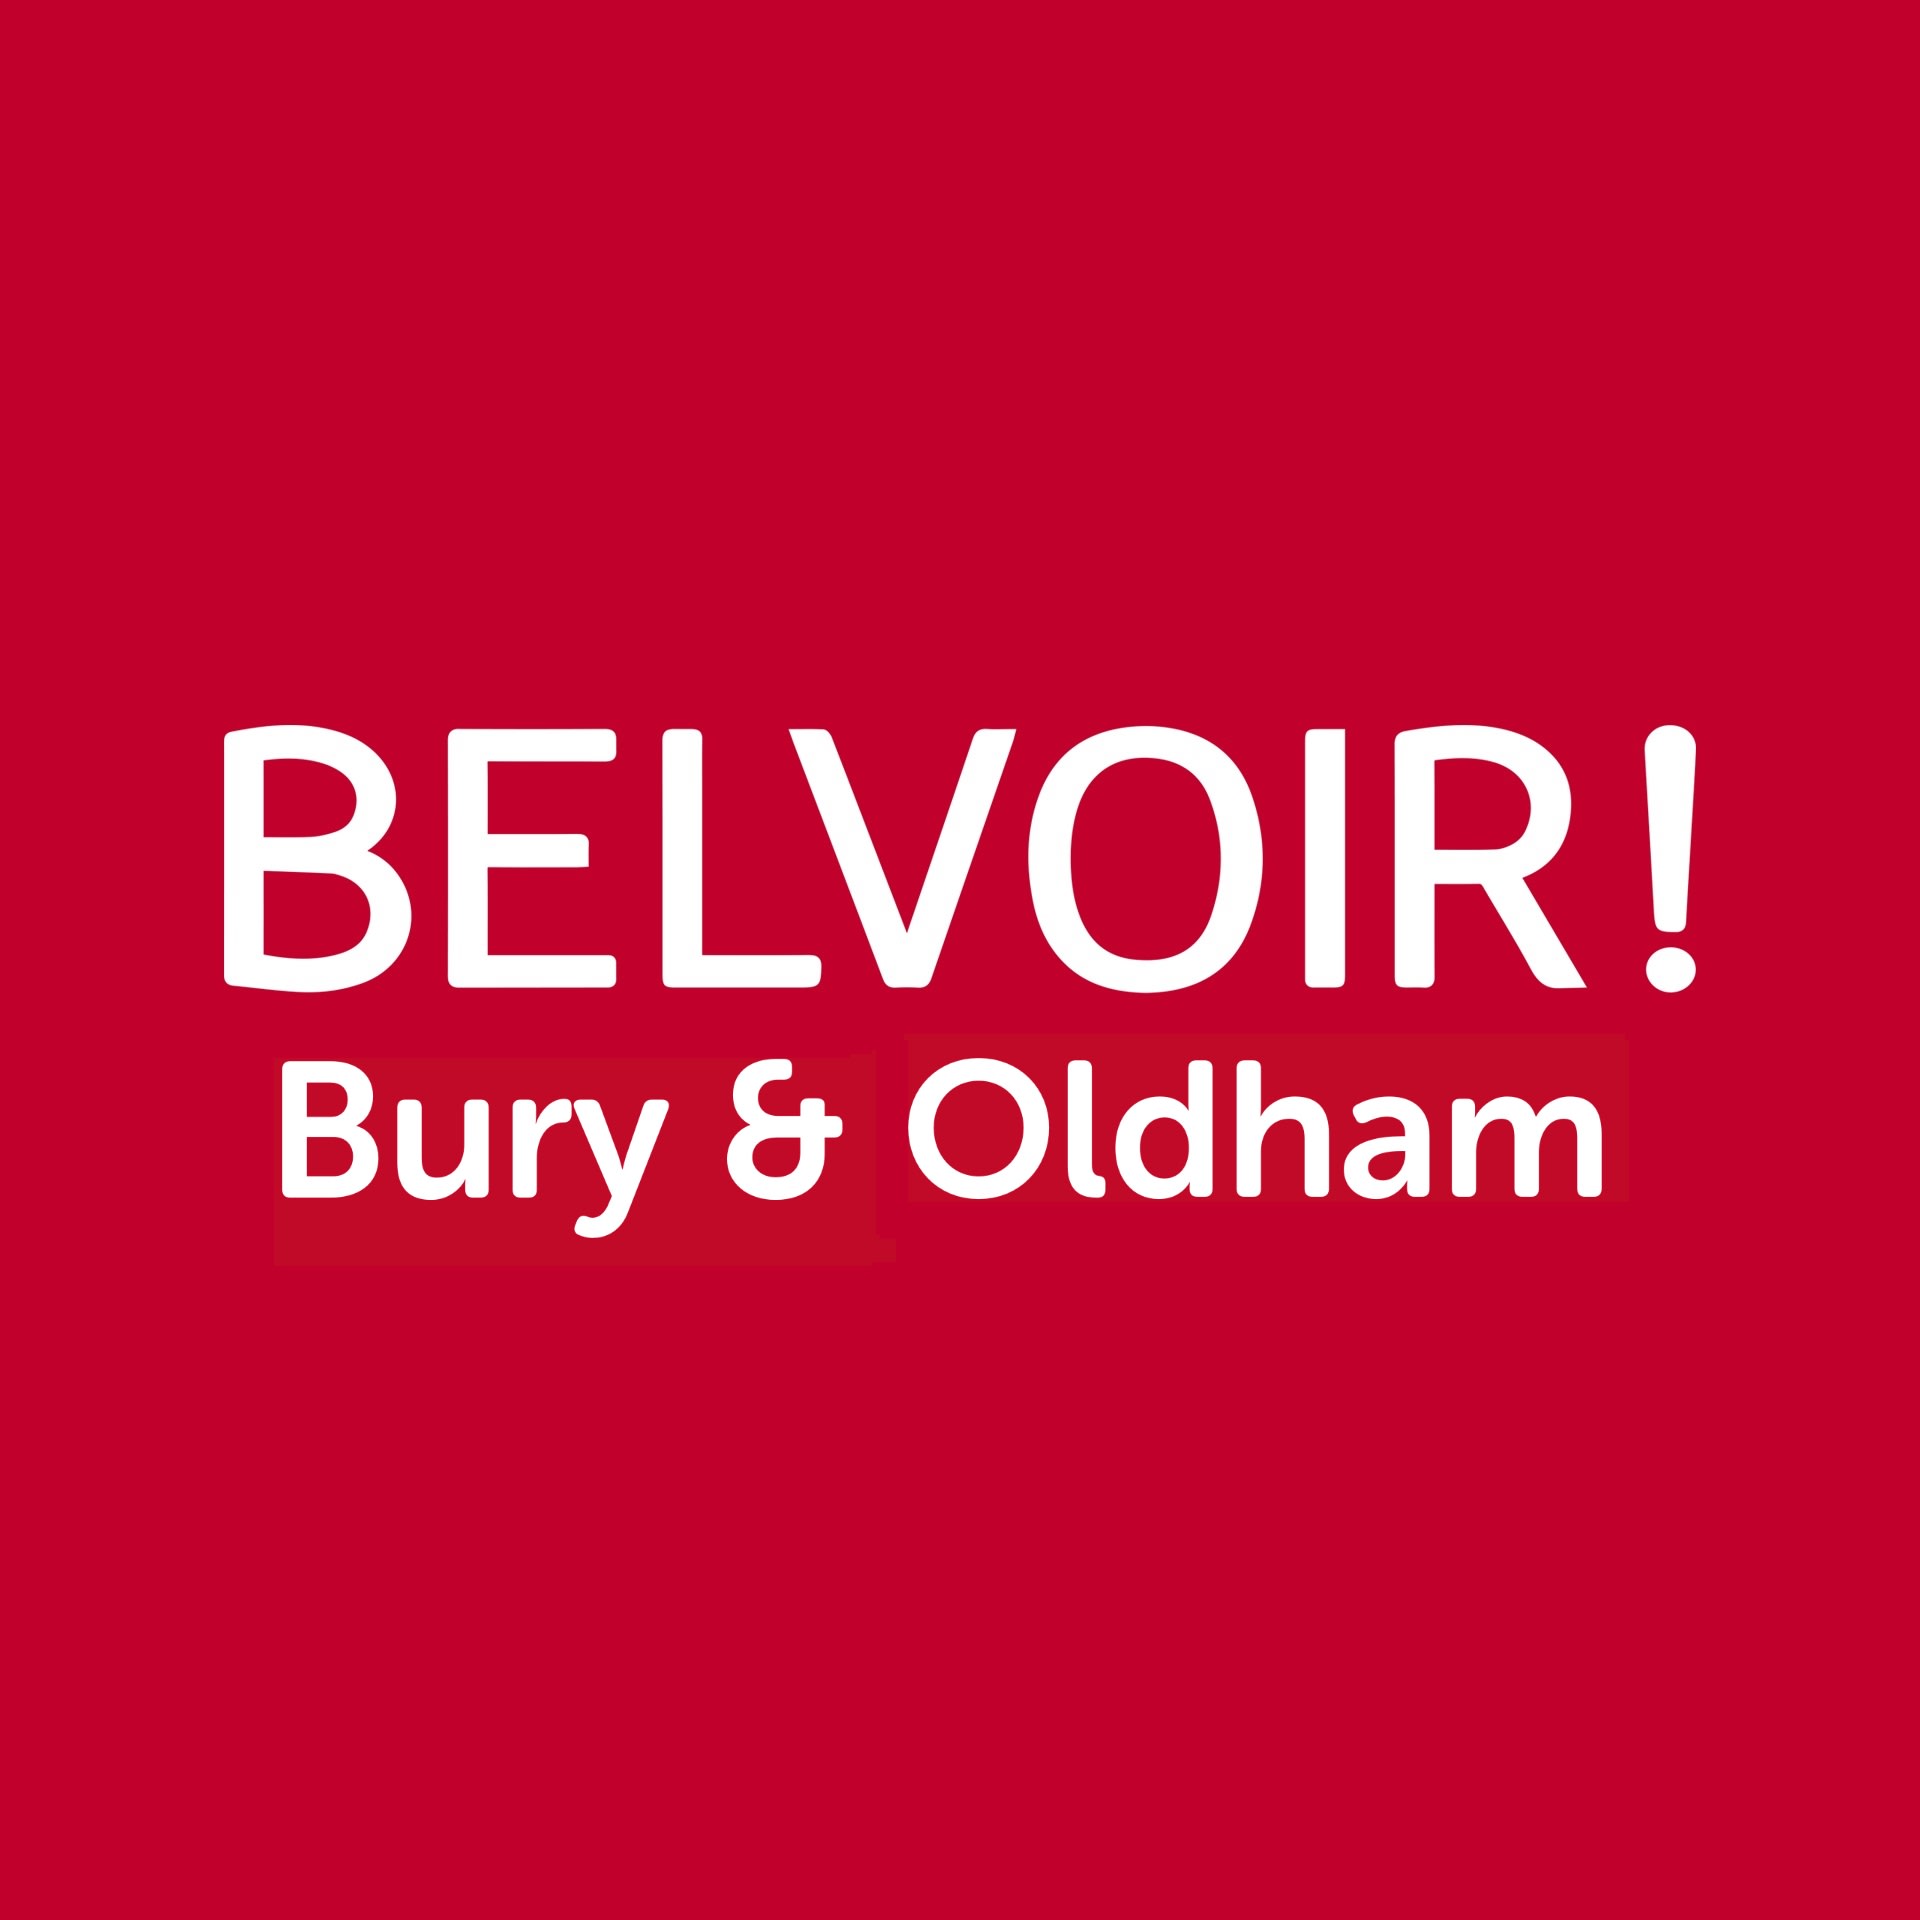 Belvoir Sales & Lettings Bury - Estate Agent - Bury, Lancashire BL9 7DJ - 01617 648525 | ShowMeLocal.com